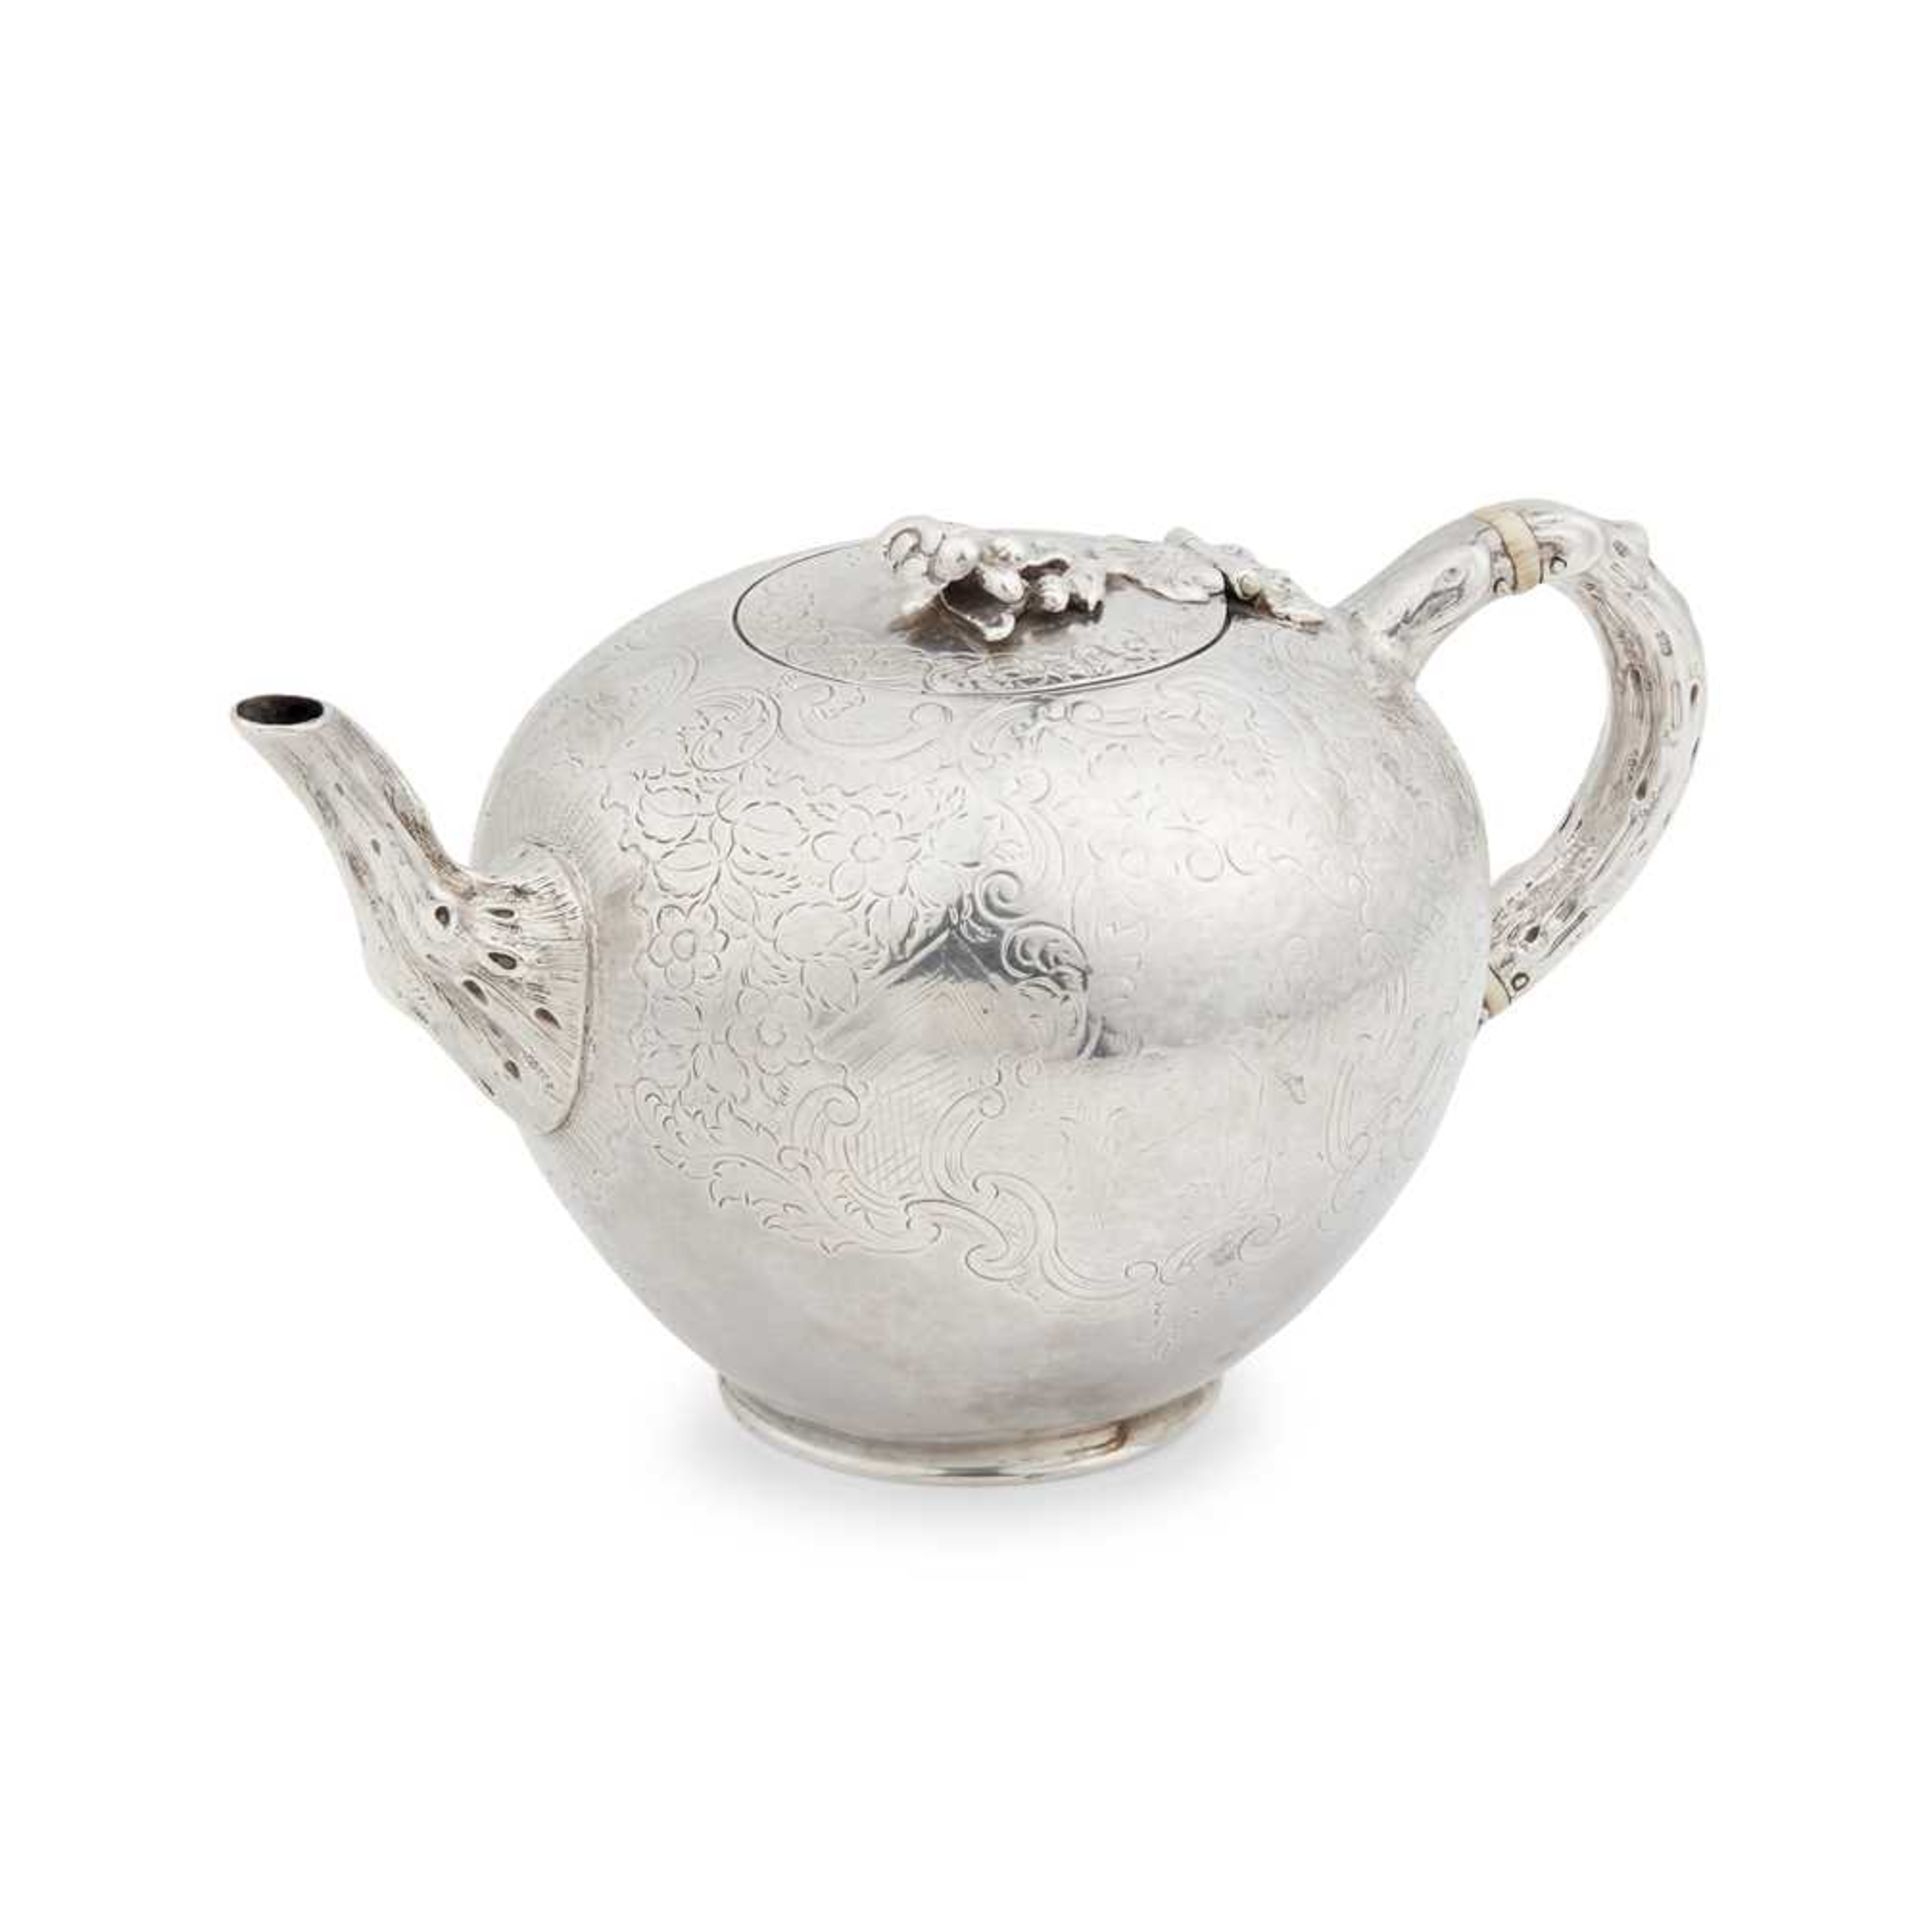 A George II teapot